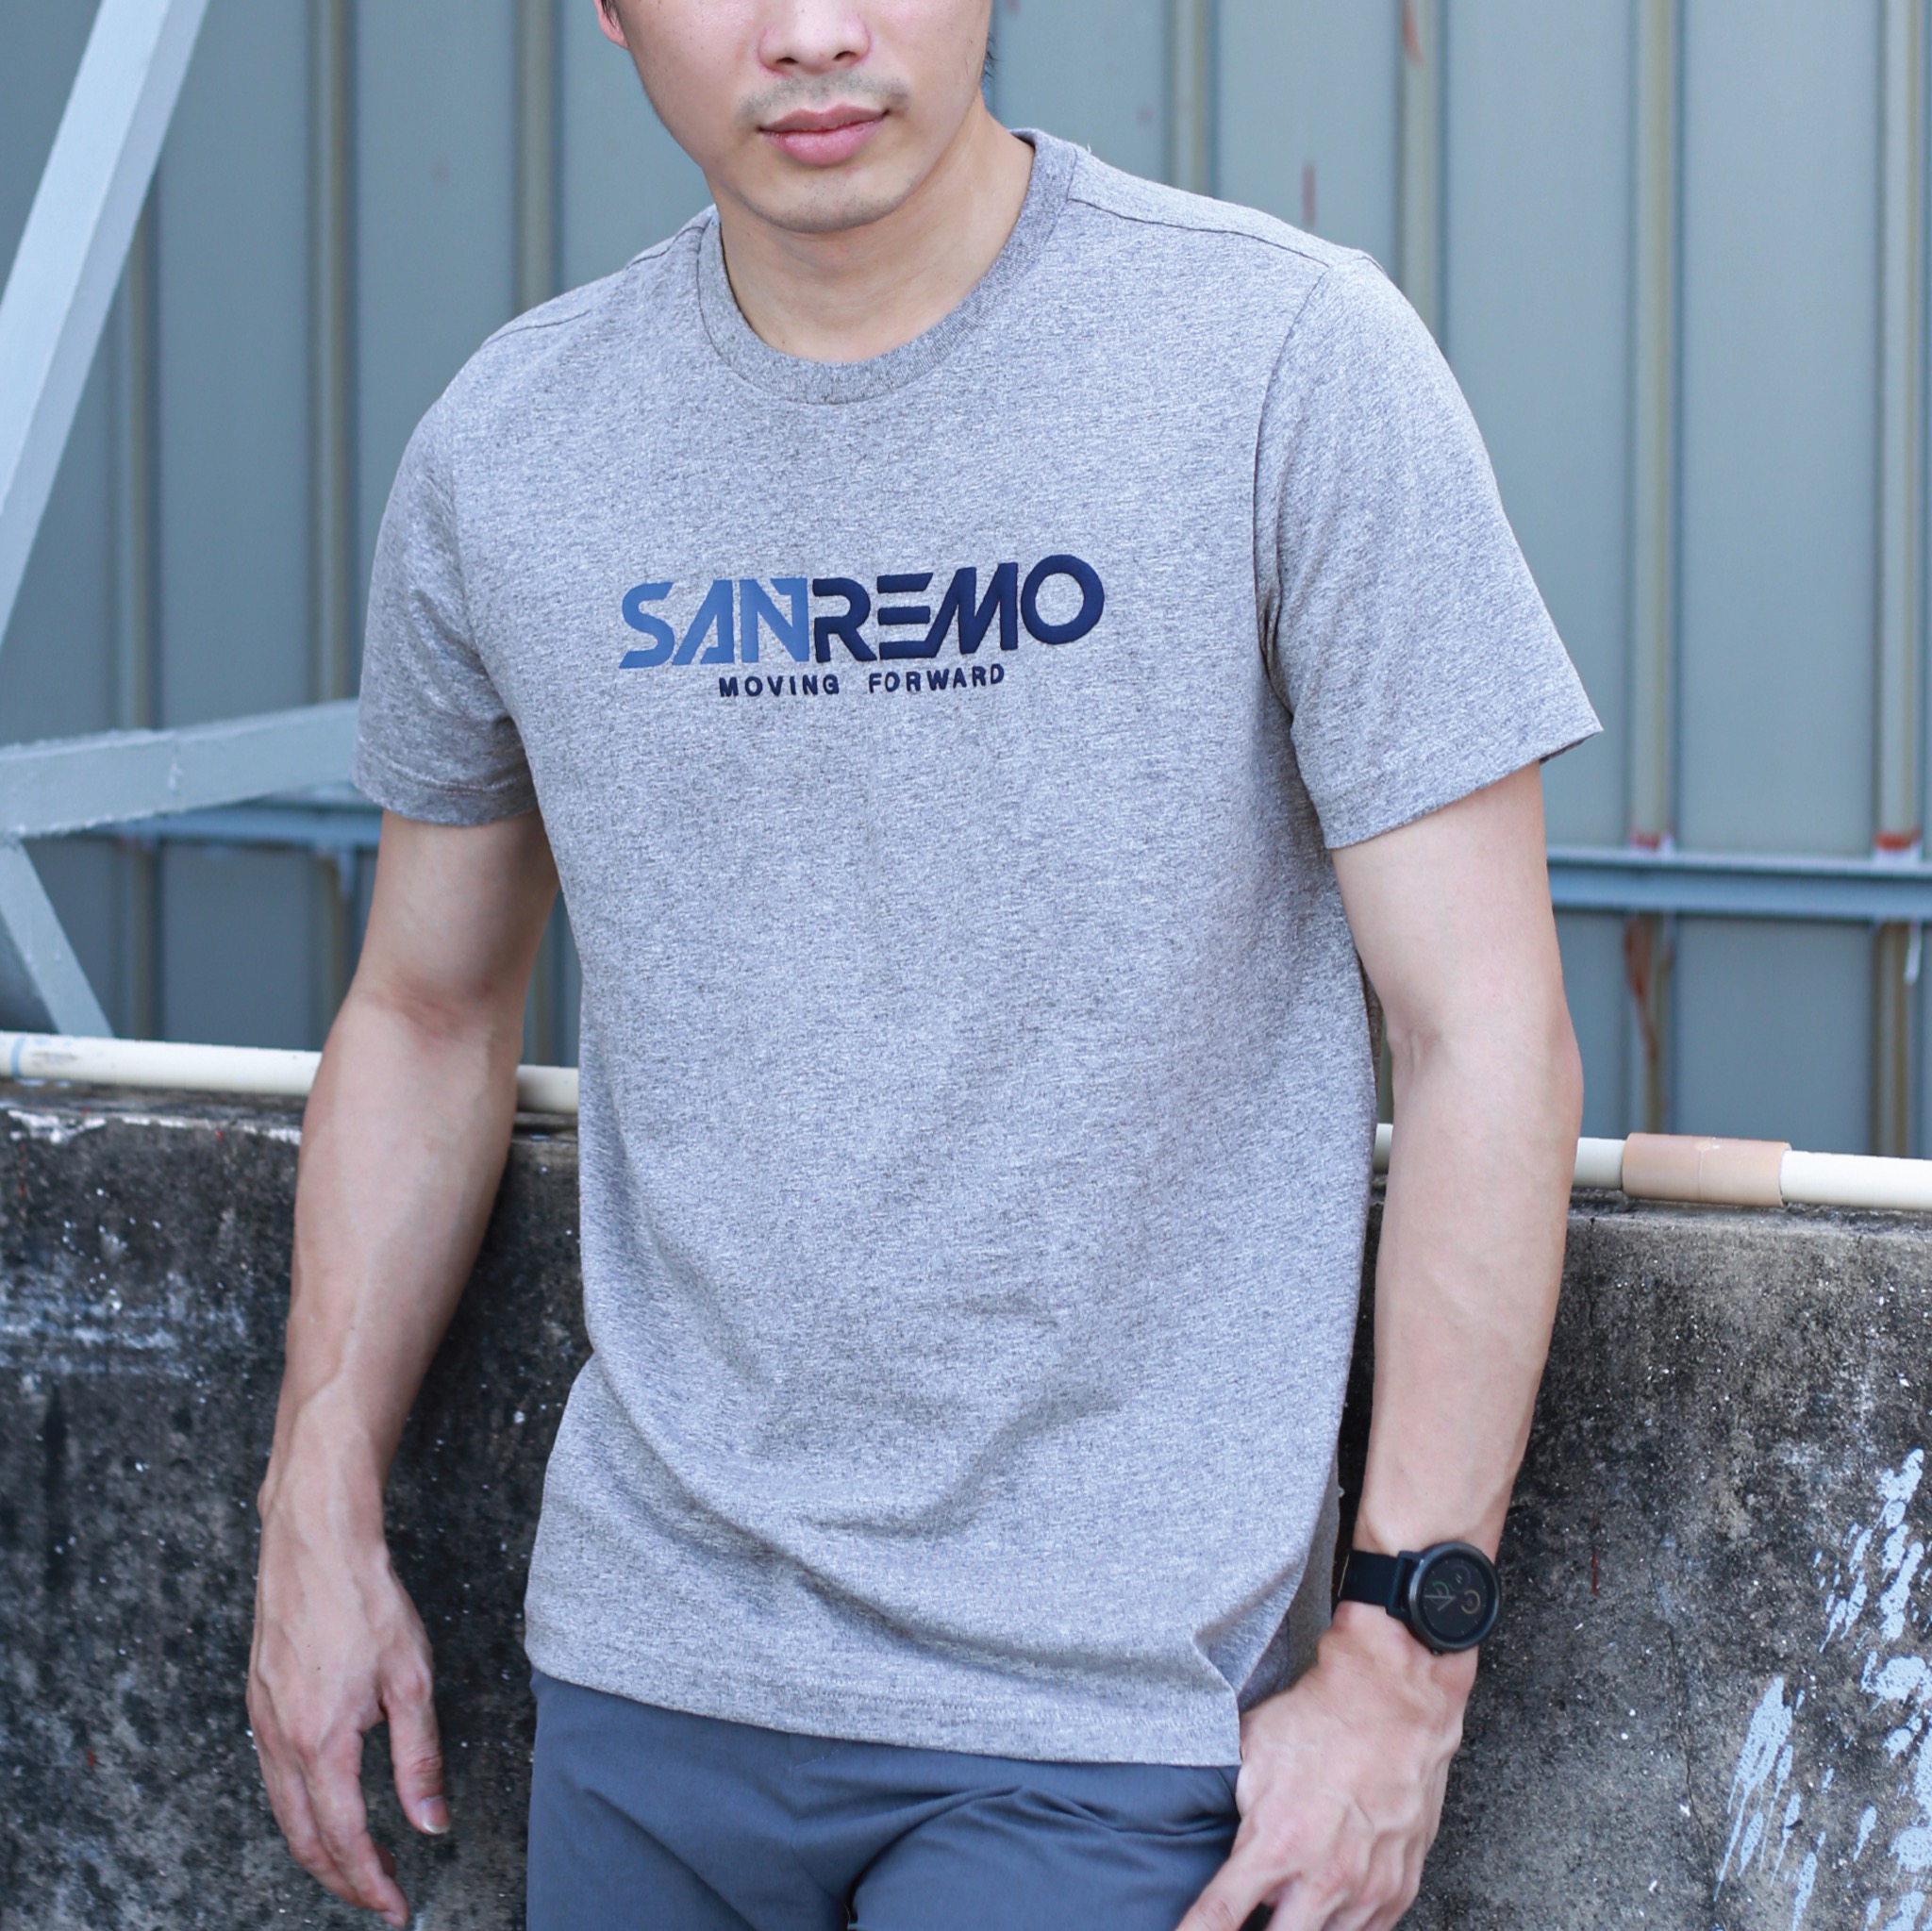 เสื้อยืดคอกลมสีเทา สกรีนลาย  "SanRemo moving forward" รหัส SCTK2